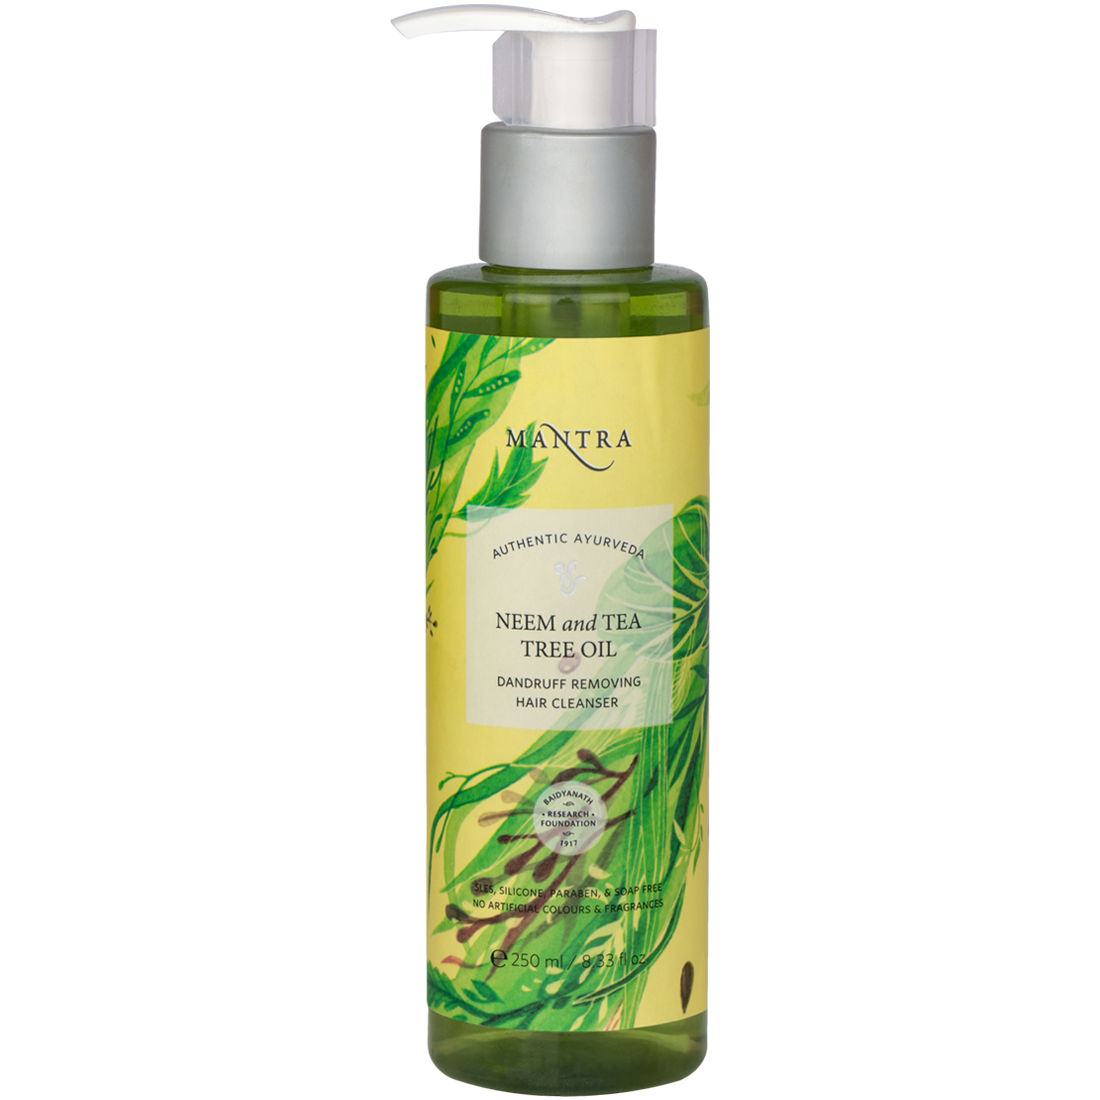 Mantra Herbal Neem & Tea Tree Oil Dandruff Removing Hair Cleanser